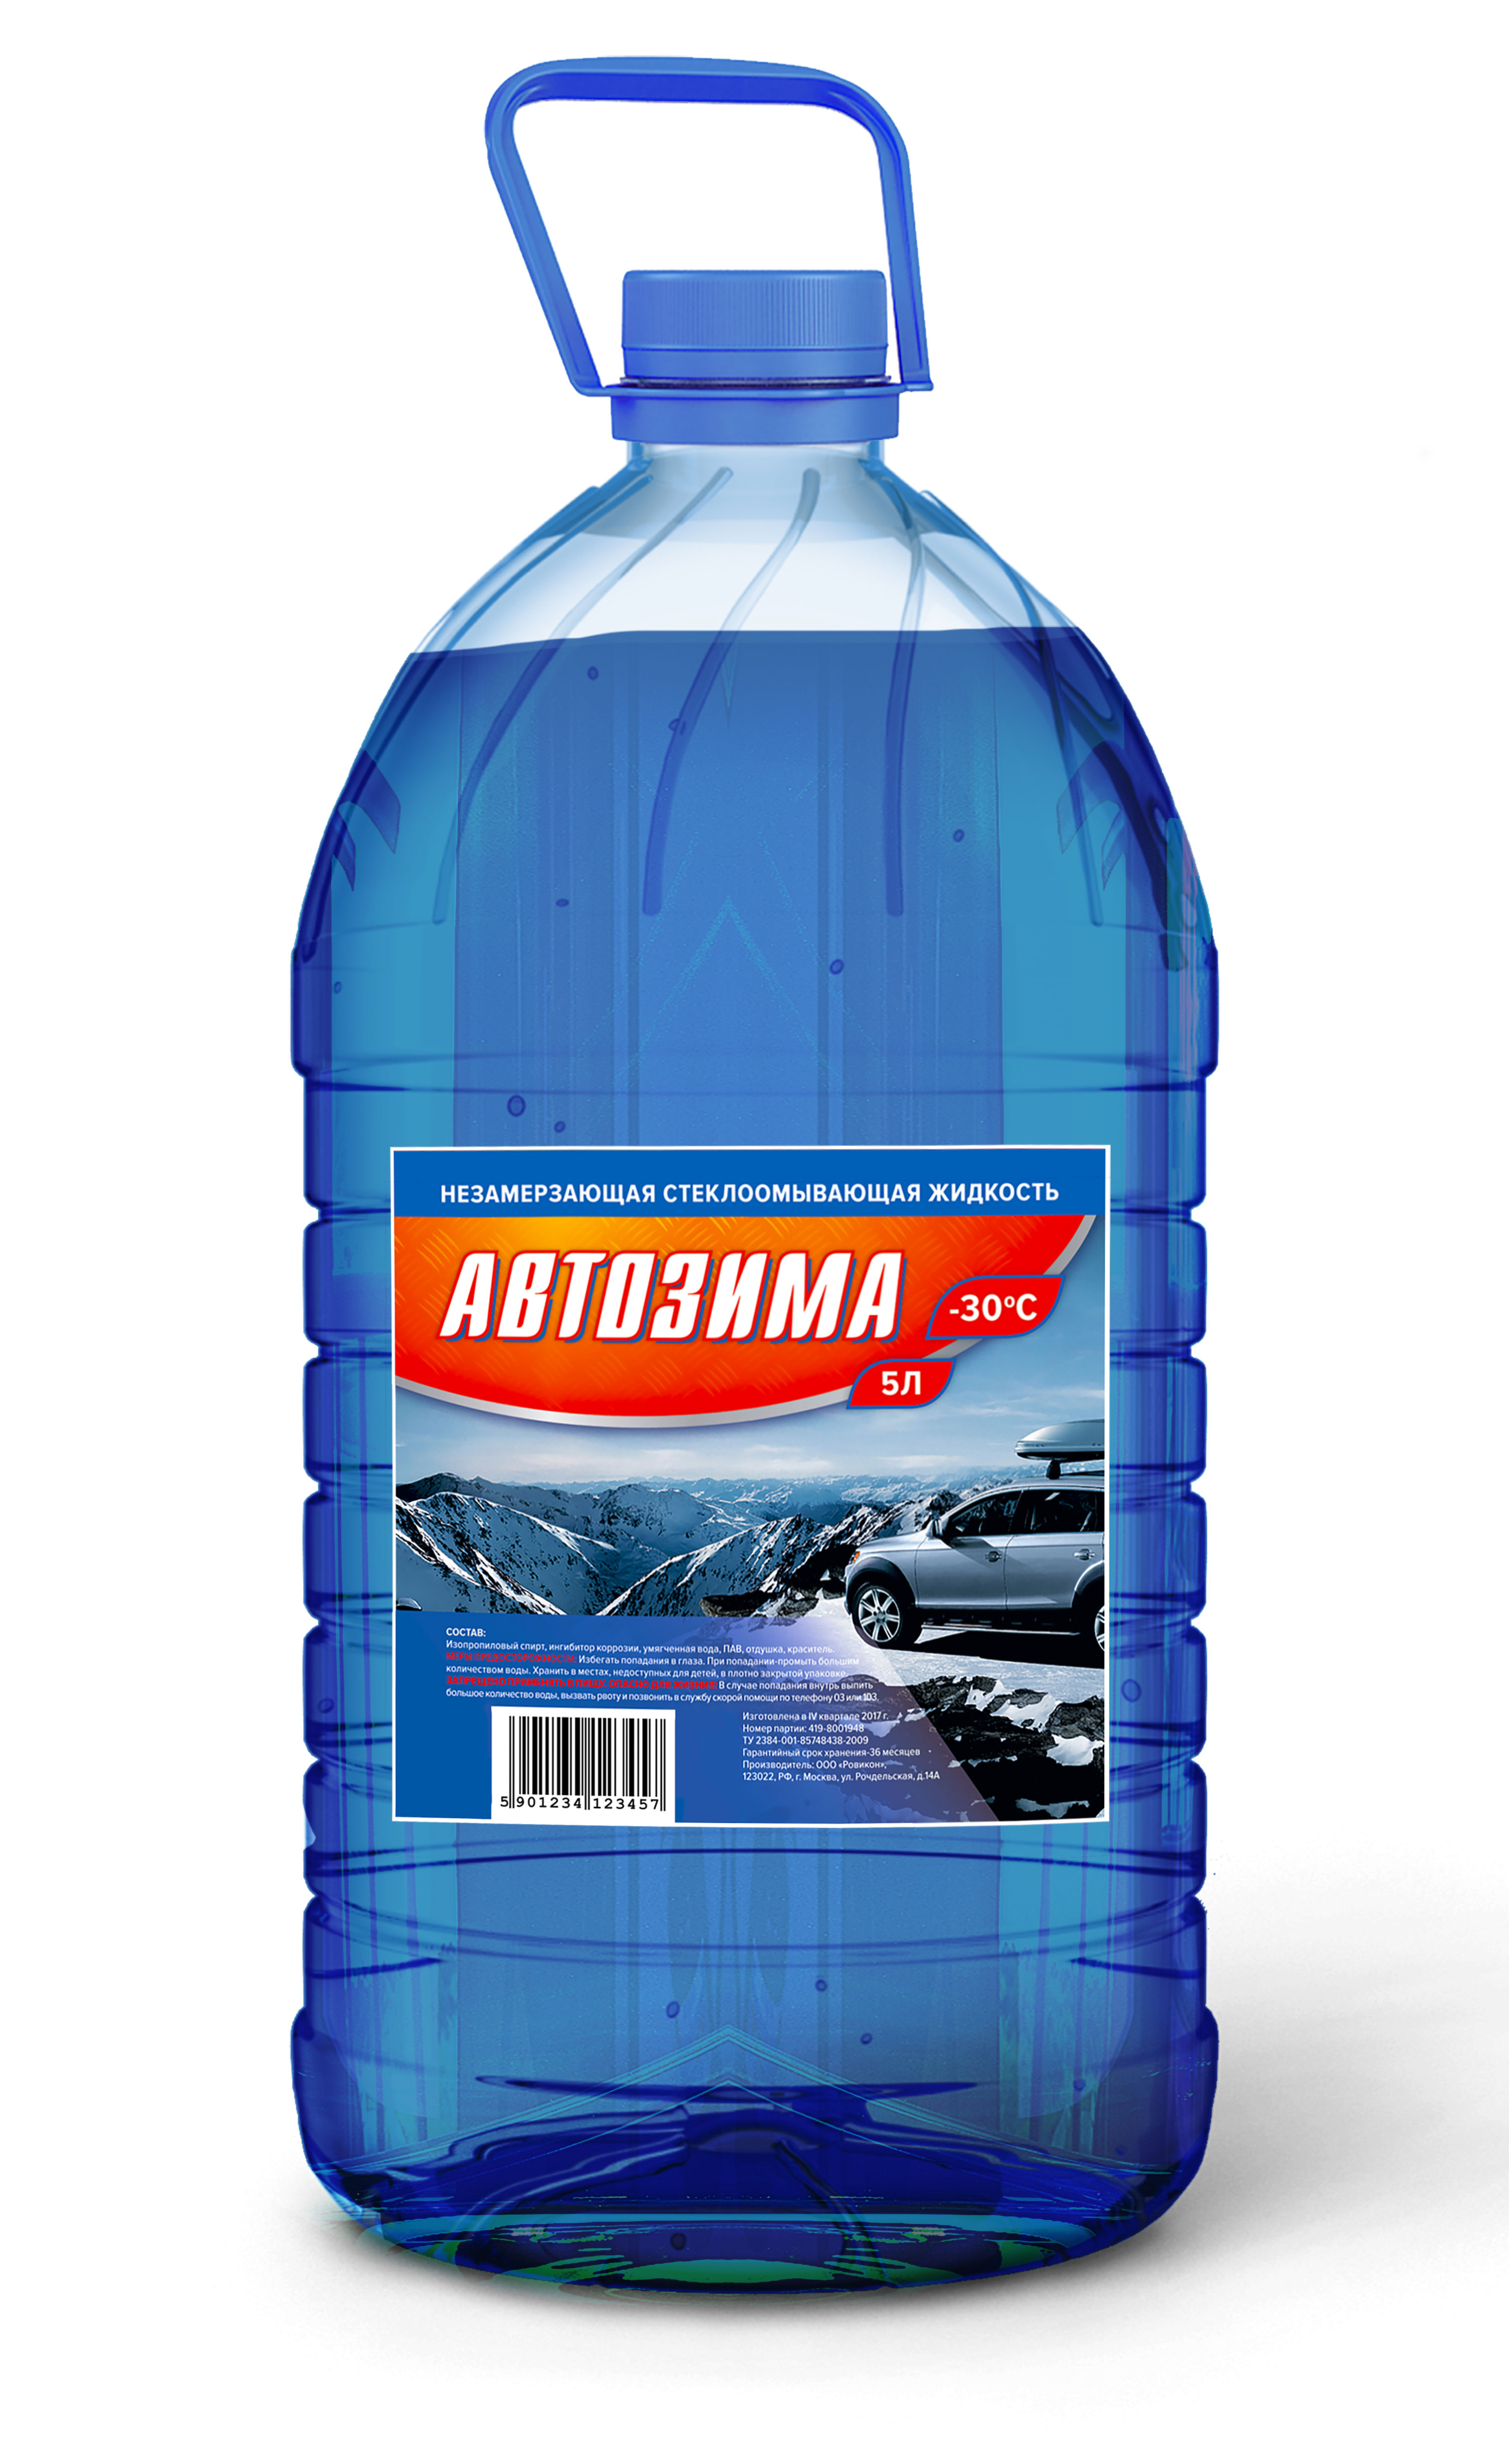  жидкость Автозима | Производитель Градус 30